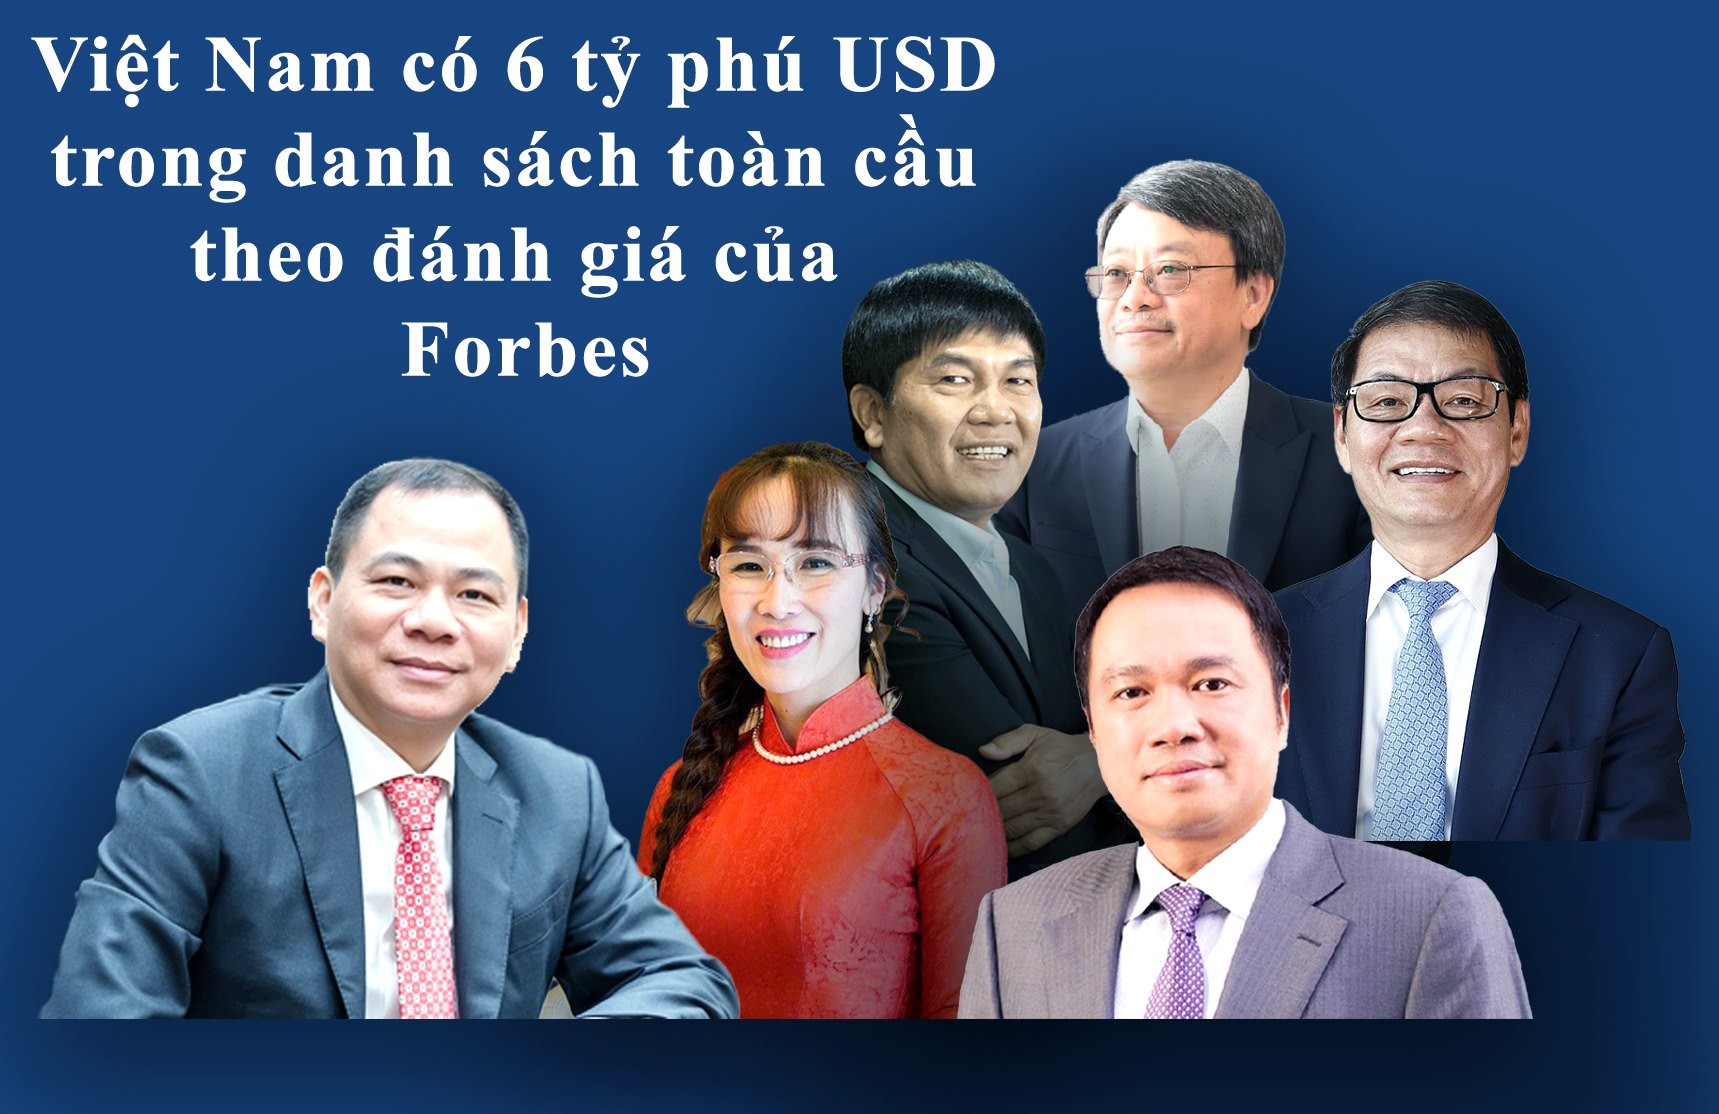 Việt Nam có 6 tỉ phú USD, ông Phạm Nhật Vượng vẫn là người giàu nhất